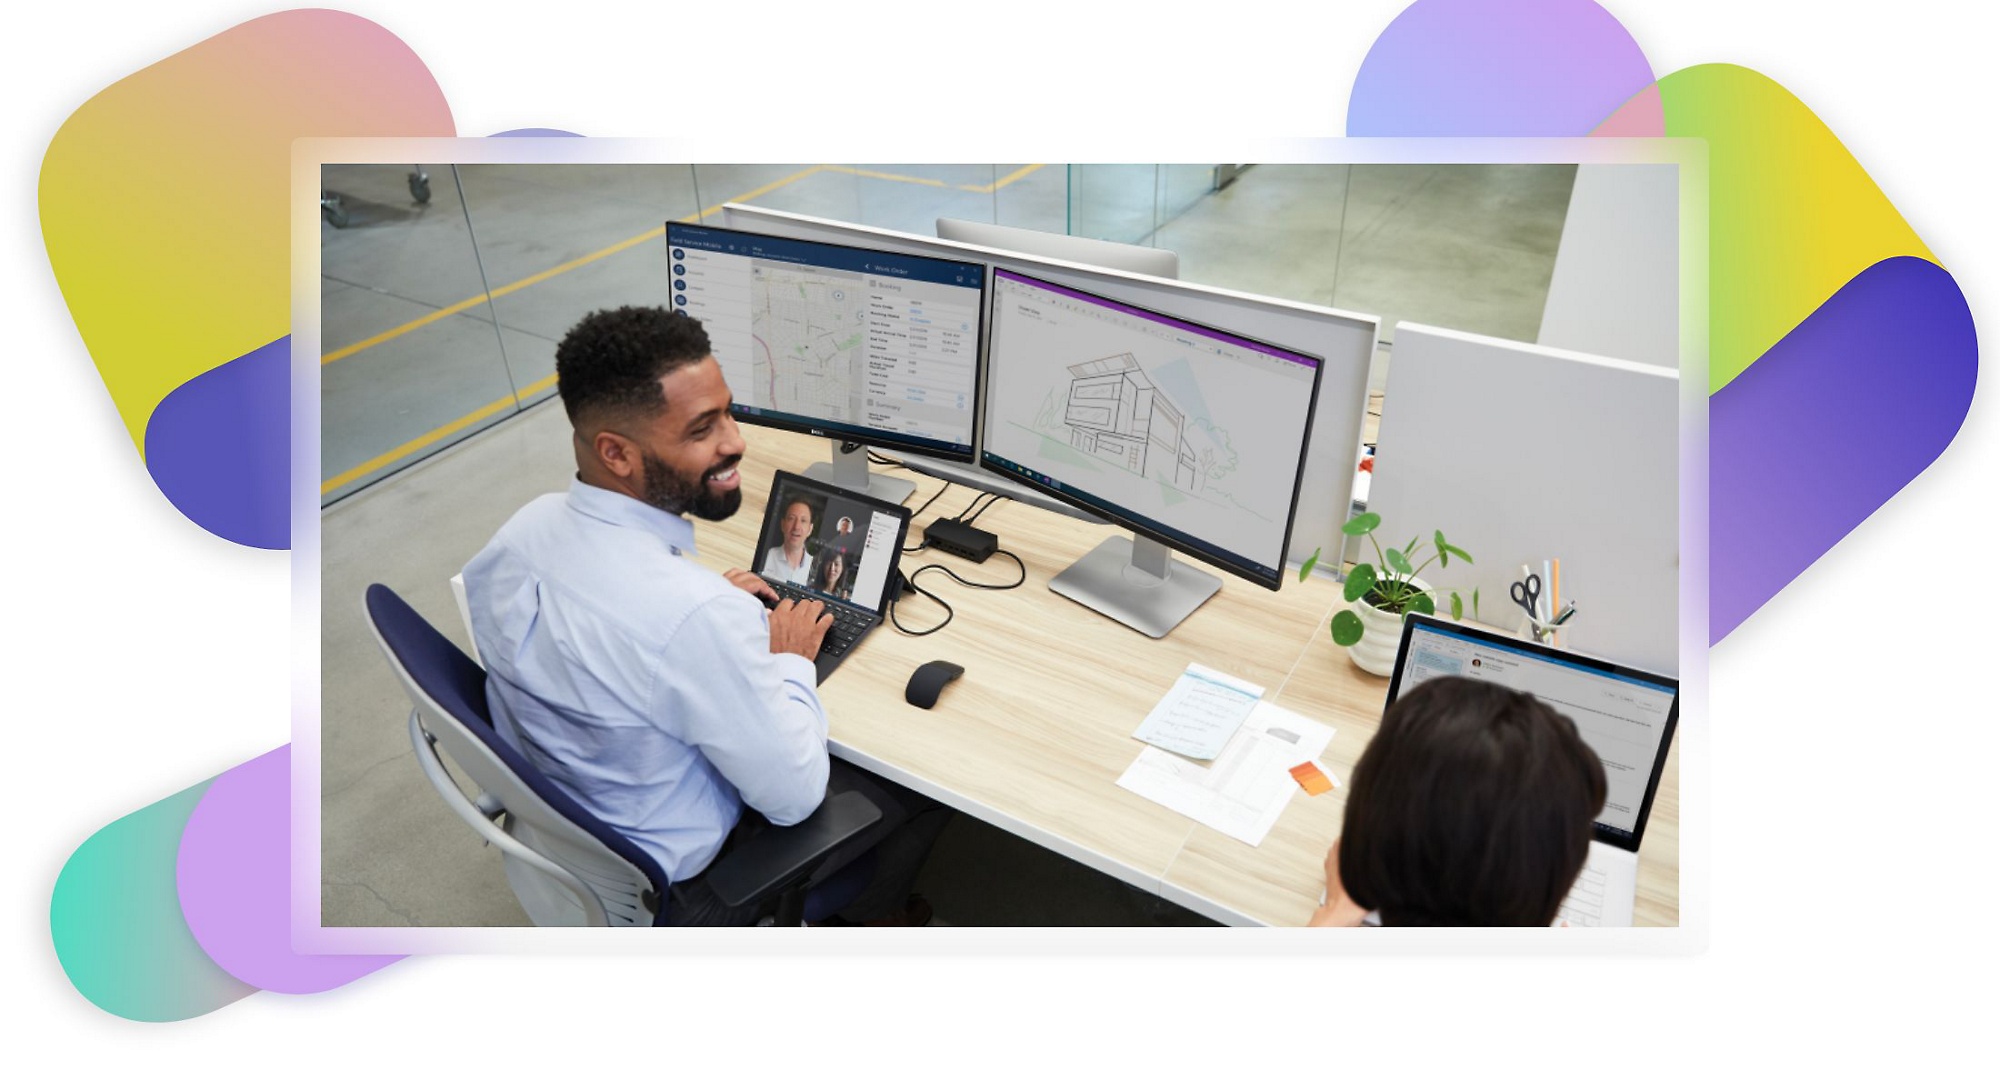 Zwei Personen an einem Schreibtisch, eine davon nimmt an einem Teams-Videoanruf teil und schaut sich Architekturentwürfe und Karten auf zwei Monitoren an